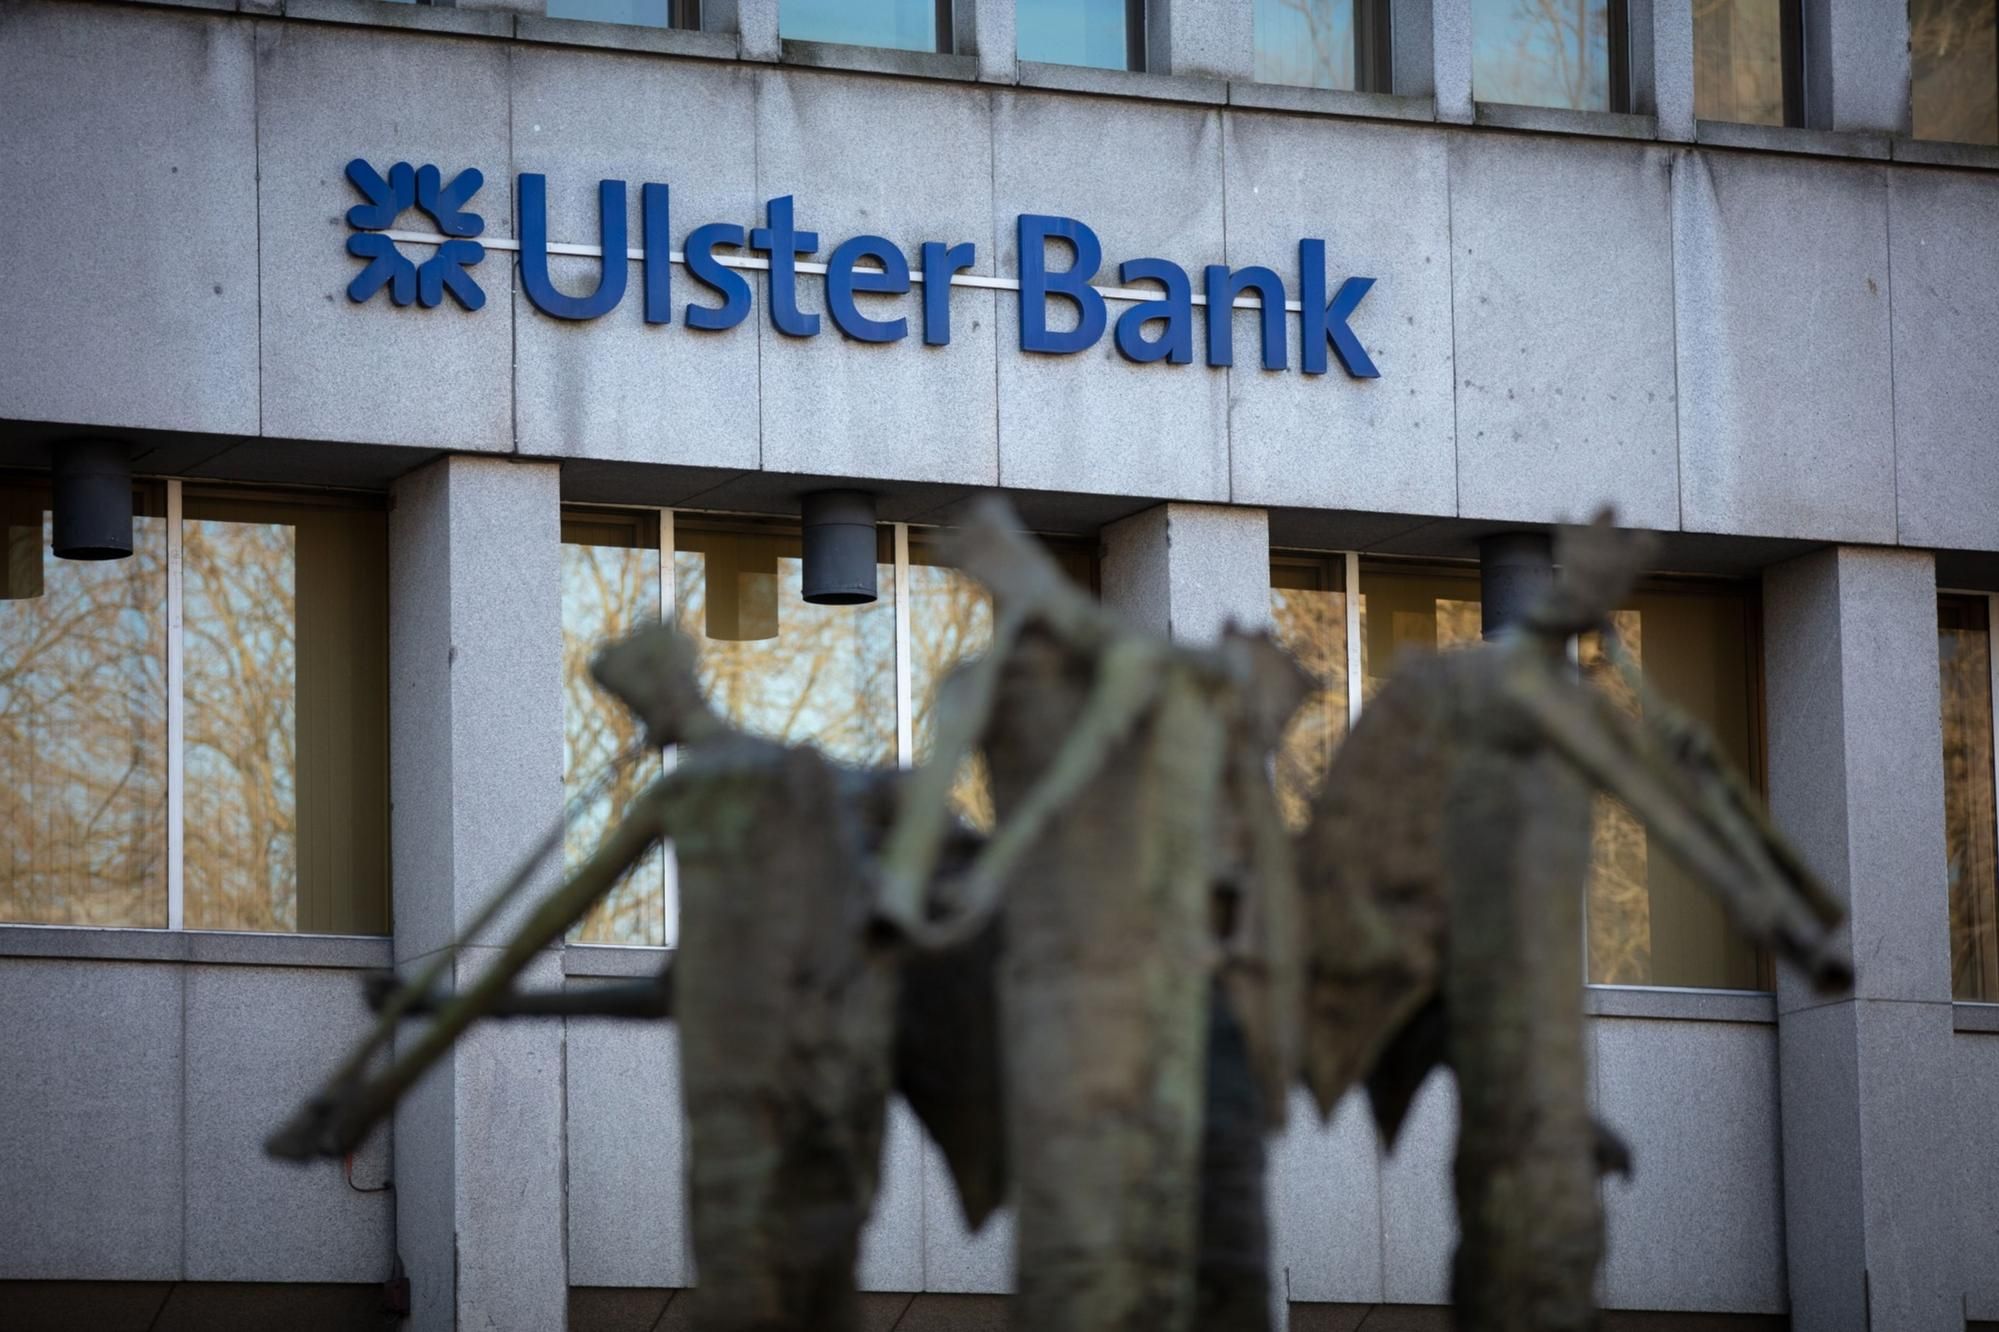 Ulster Bank теряет привлекательность ипотечных трекеров, если затронуты тысячи клиентов